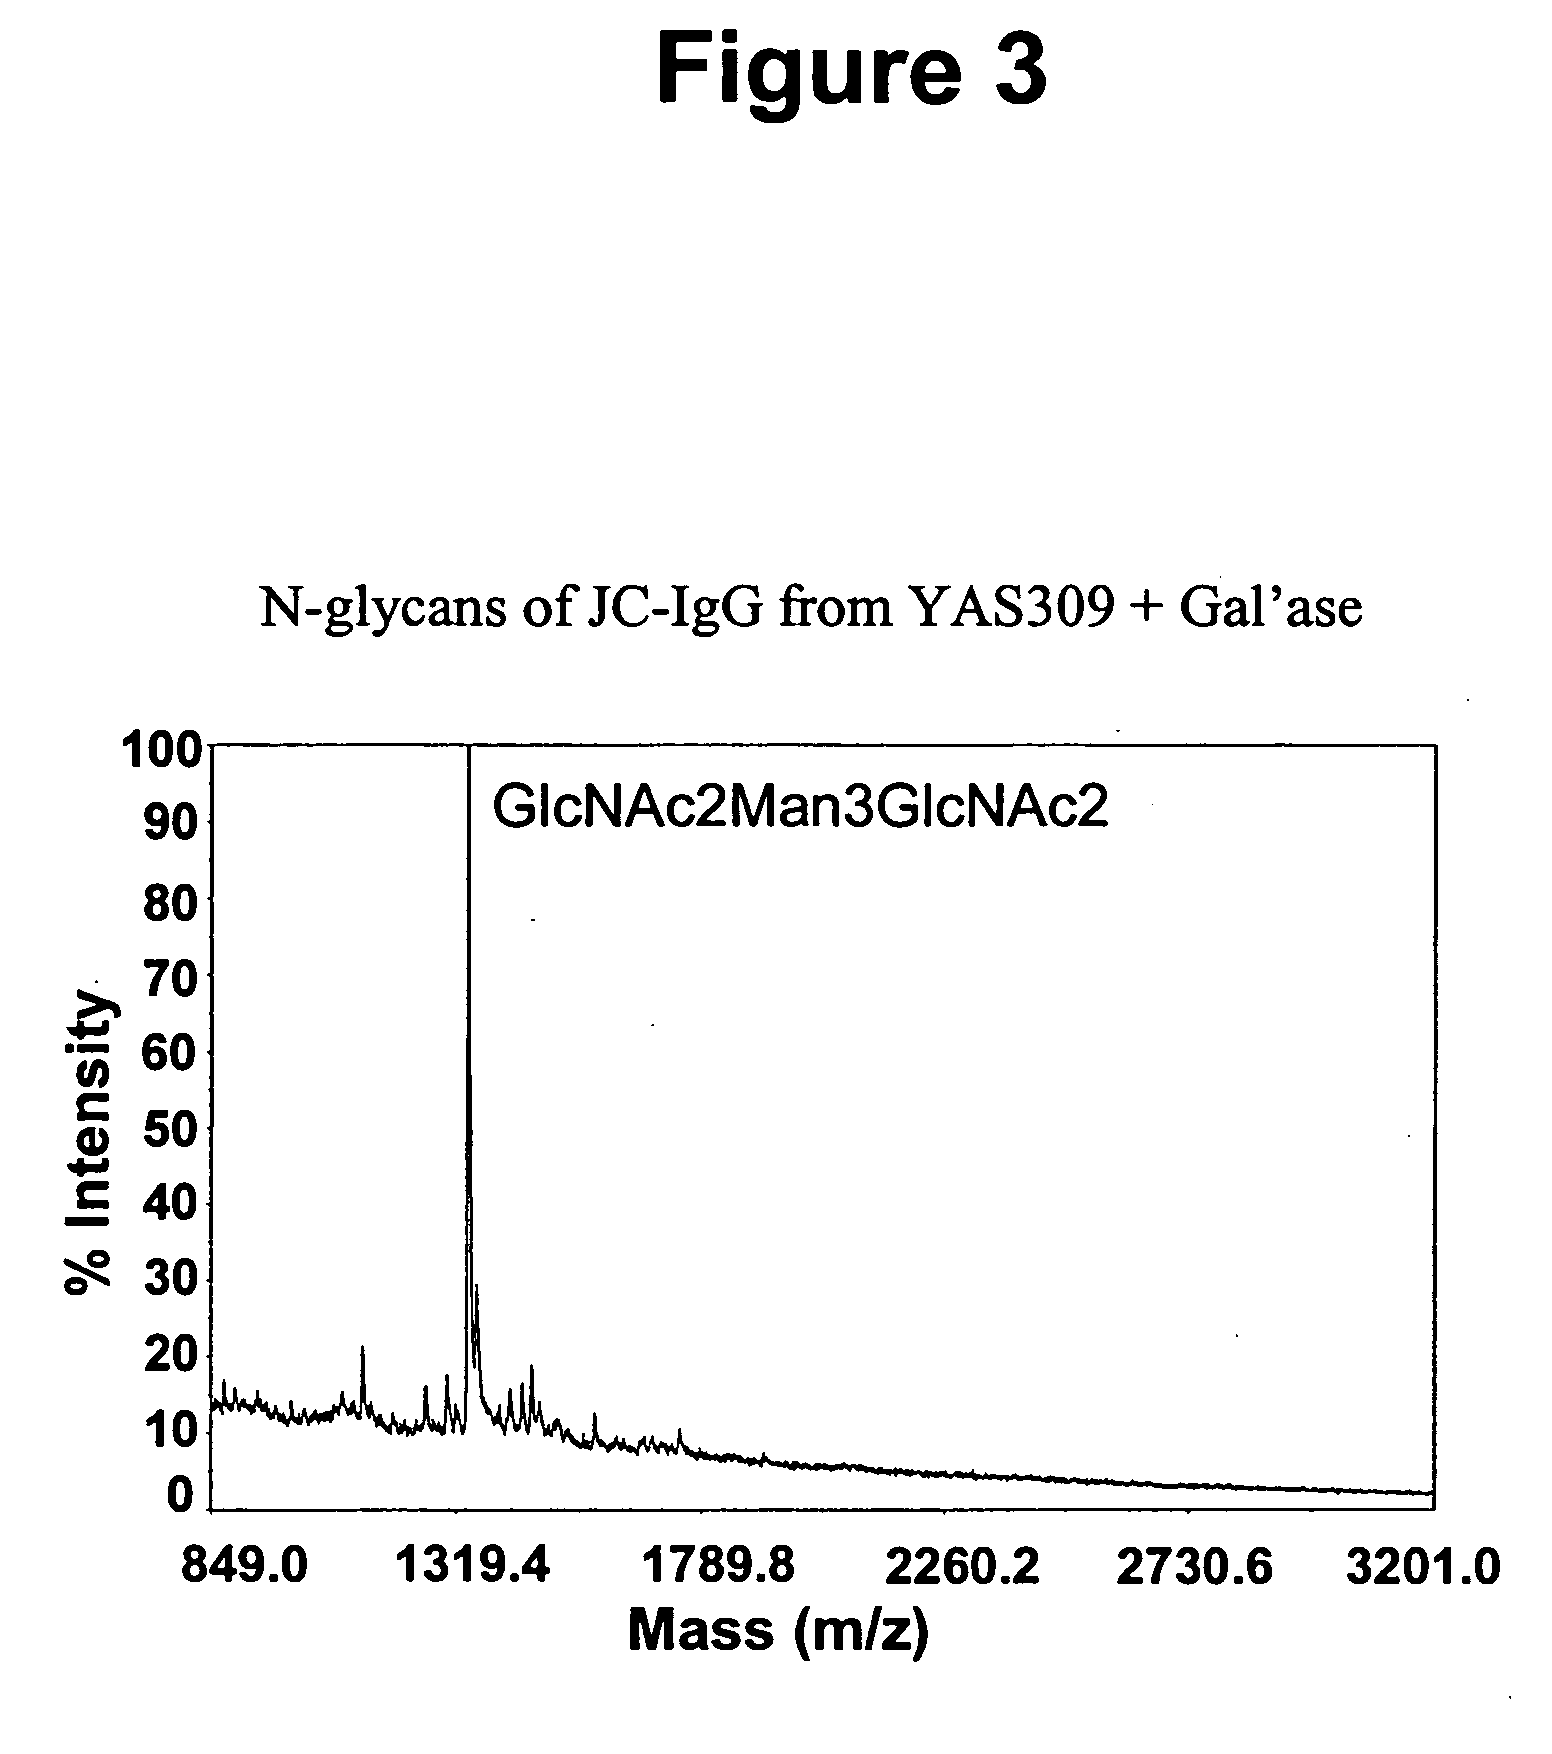 Immunoglobulins comprising predominantly a GlcNAc2Man3GlcNAc2 glycoform